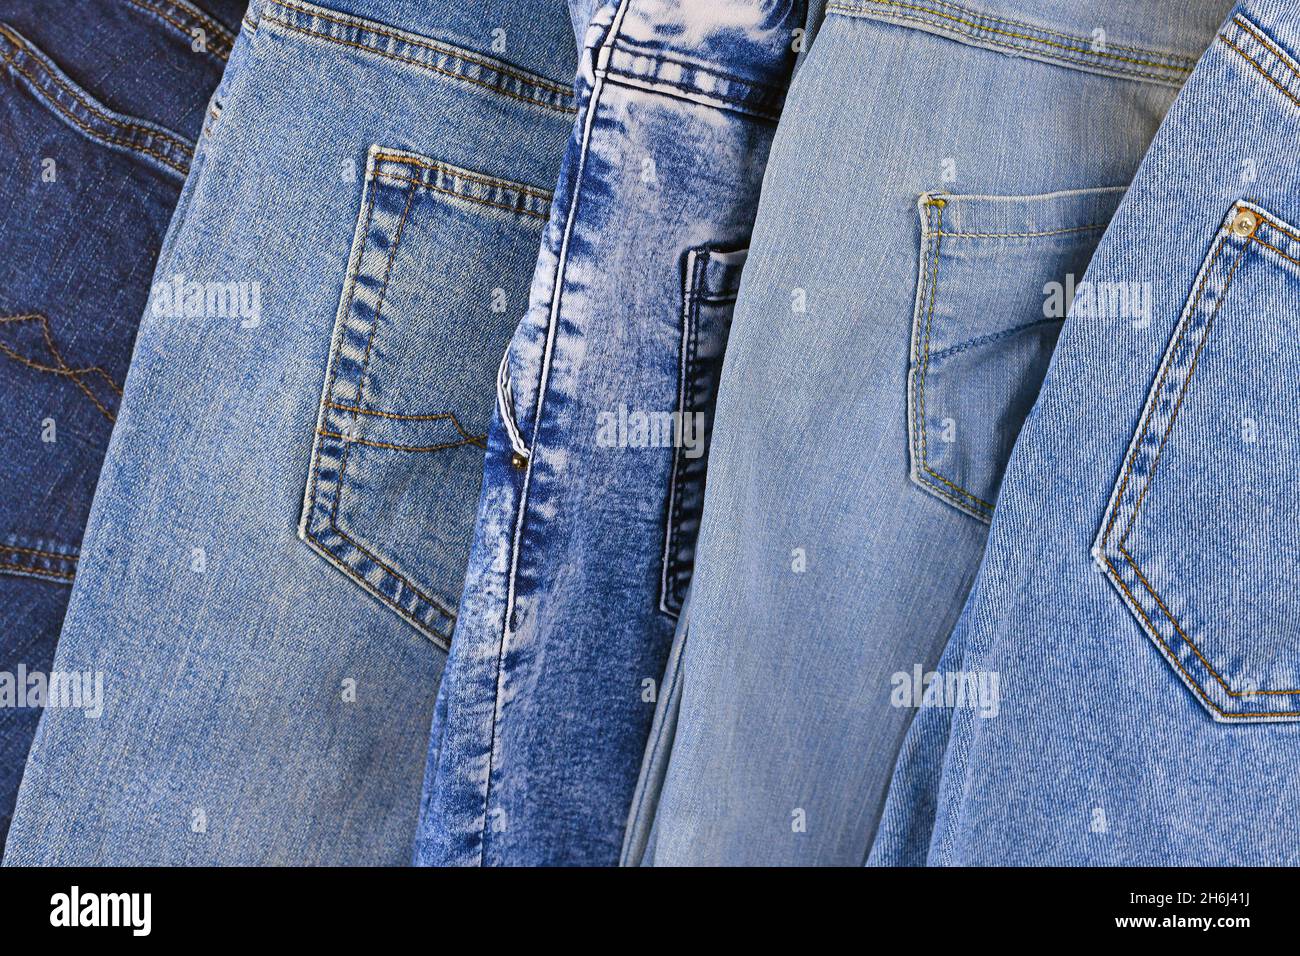 Vista superior de pantalones vaqueros azules de diferentes colores Foto de stock